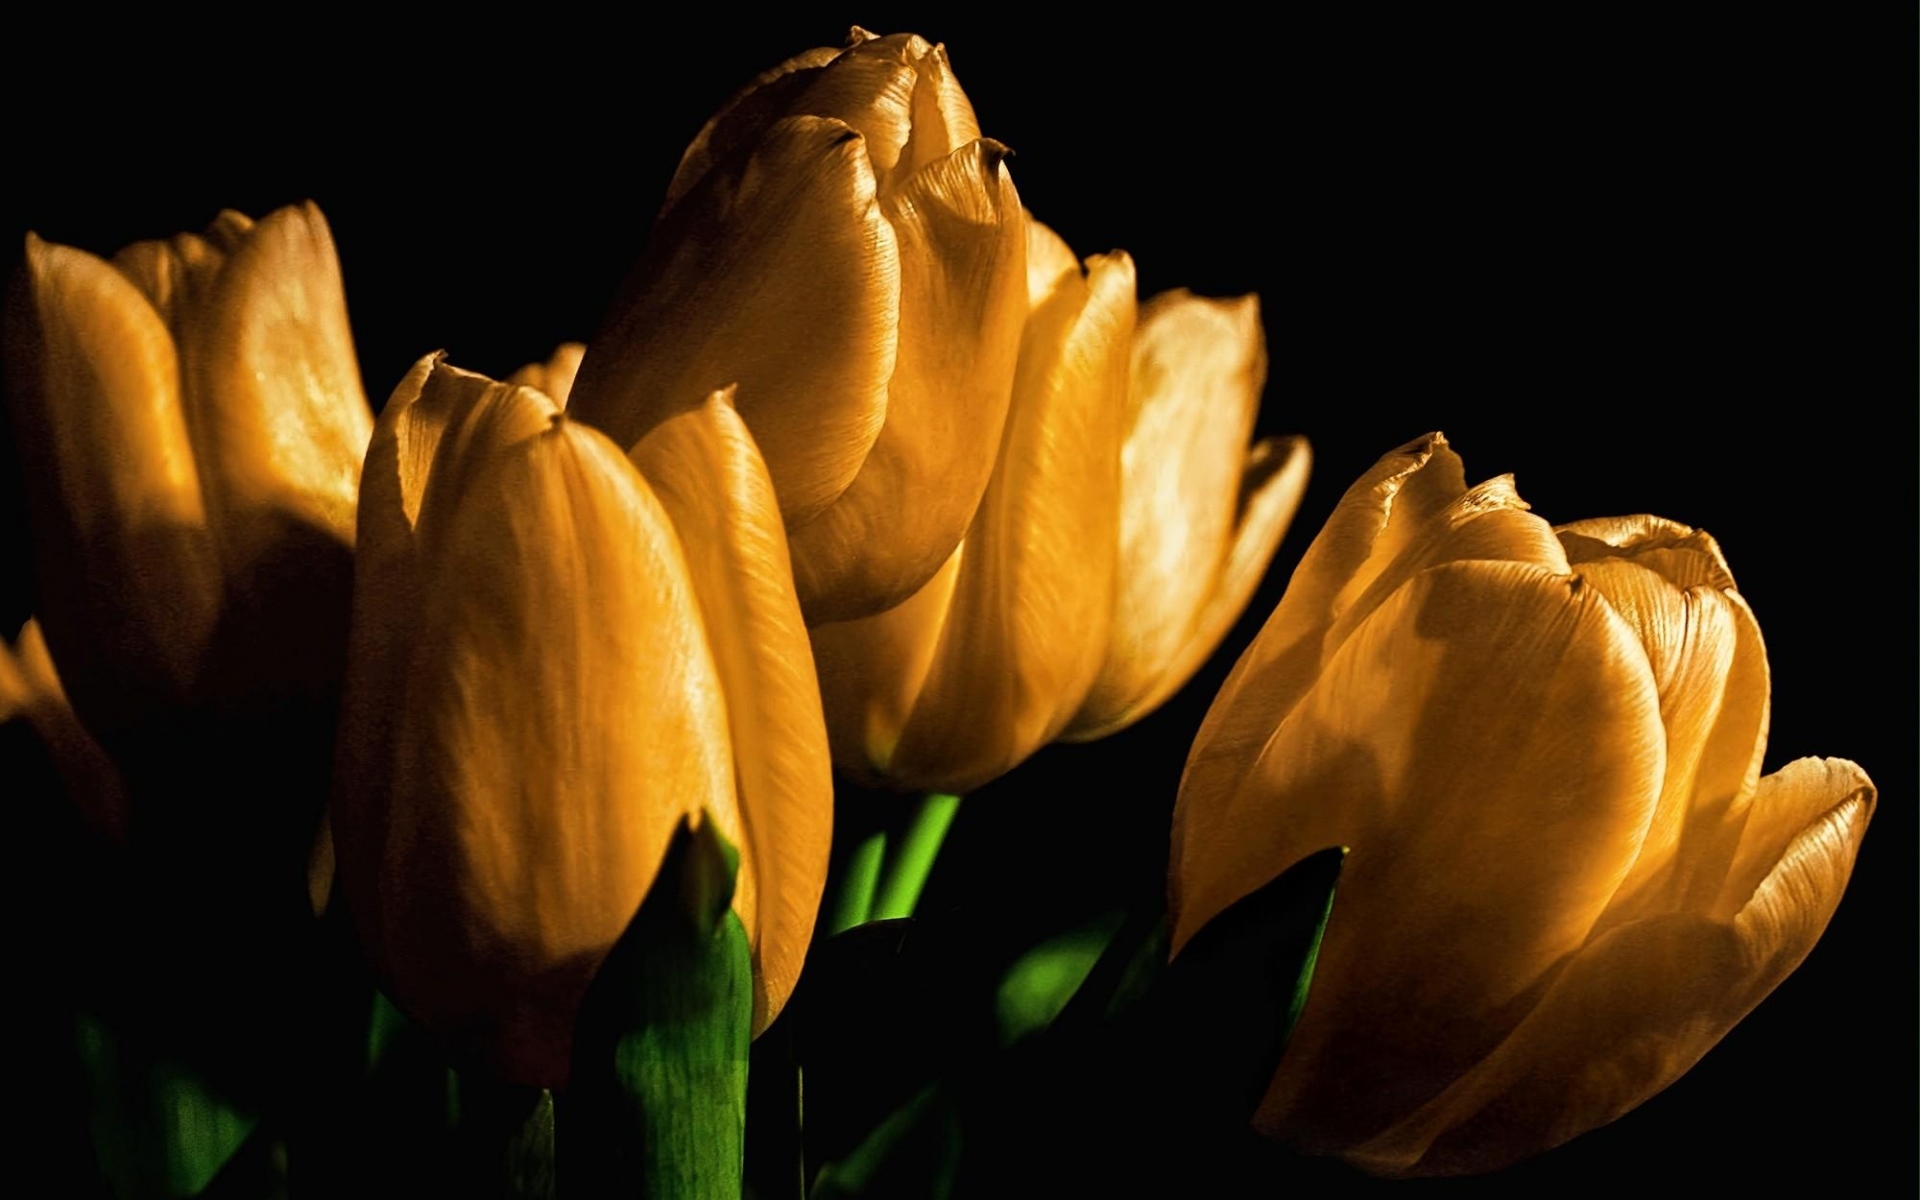 Картинки Тюльпаны, желтый, цветы, бутоны, свет, черный фон фото и обои на рабочий стол